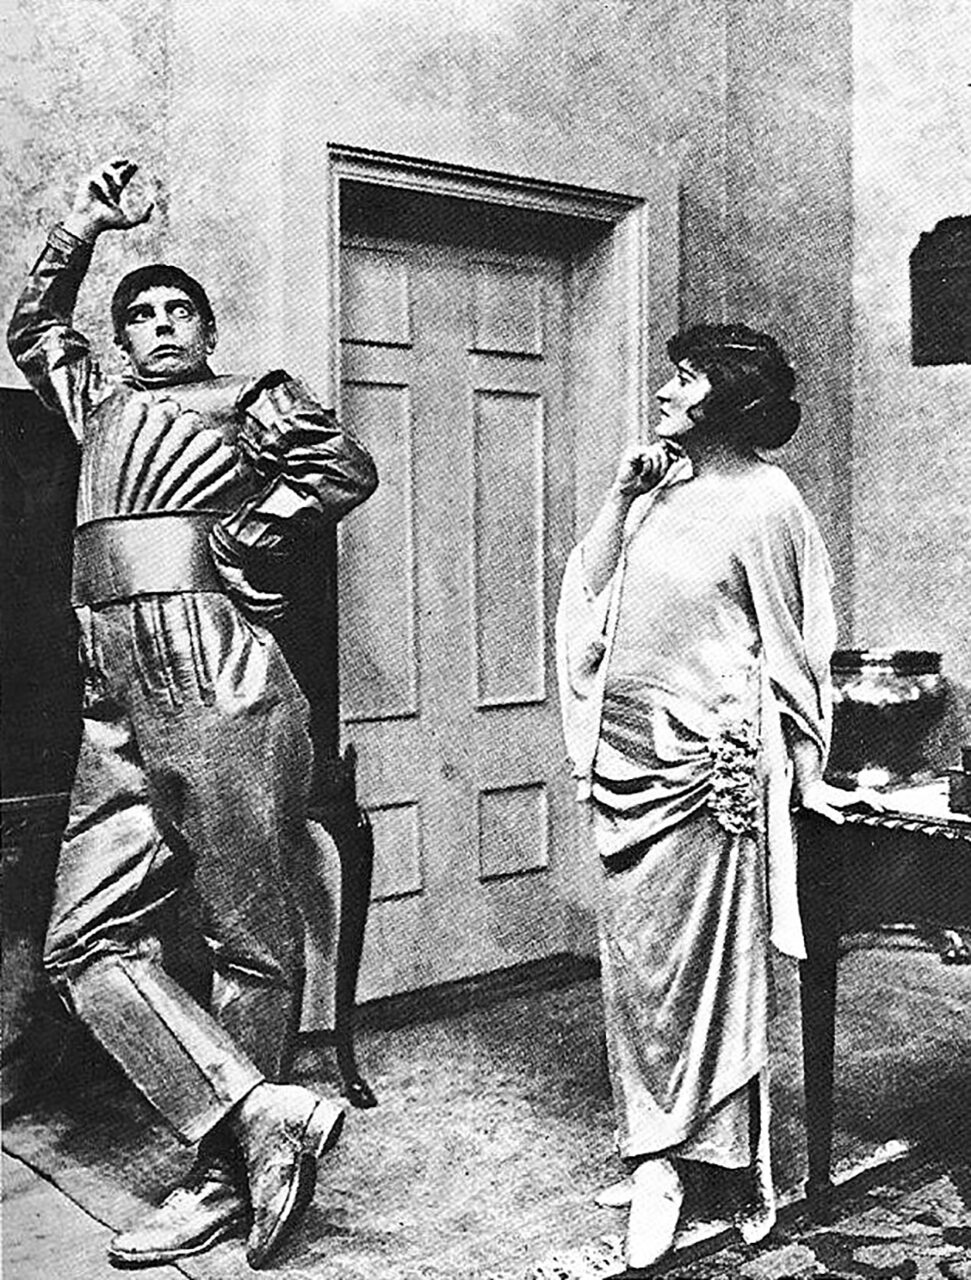 Czarno-białe zdjęcie przedstawiające mężczyznę w pasiastym kostiumie, który wygląda przestraszony, stojącego obok kobiety w długiej sukni, która wydaje się być zaniepokojona. Scena rozgrywa się w pomieszczeniu z drzwiami w tle.